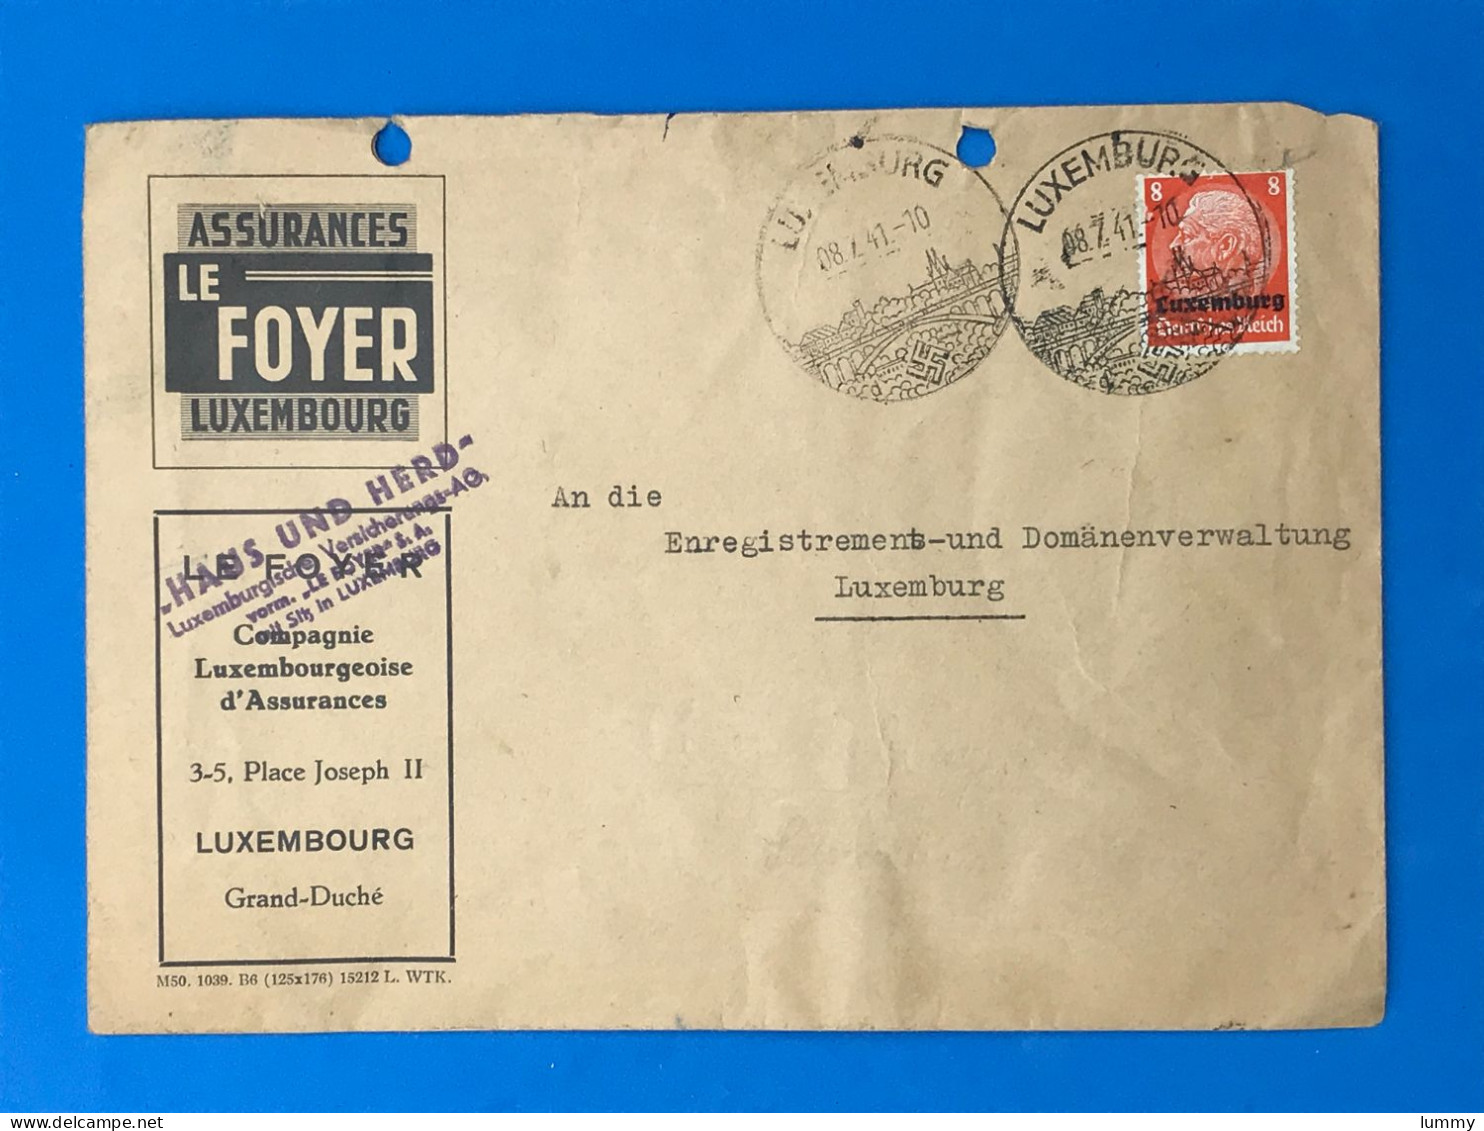 Luxembourg - Assurances Le Foyer - Enveloppe - Deutsches Reich - 08.07.41 -  Luxemburg Wk2 Ww2 Besatzung Militaria - 1940-1944 Occupation Allemande